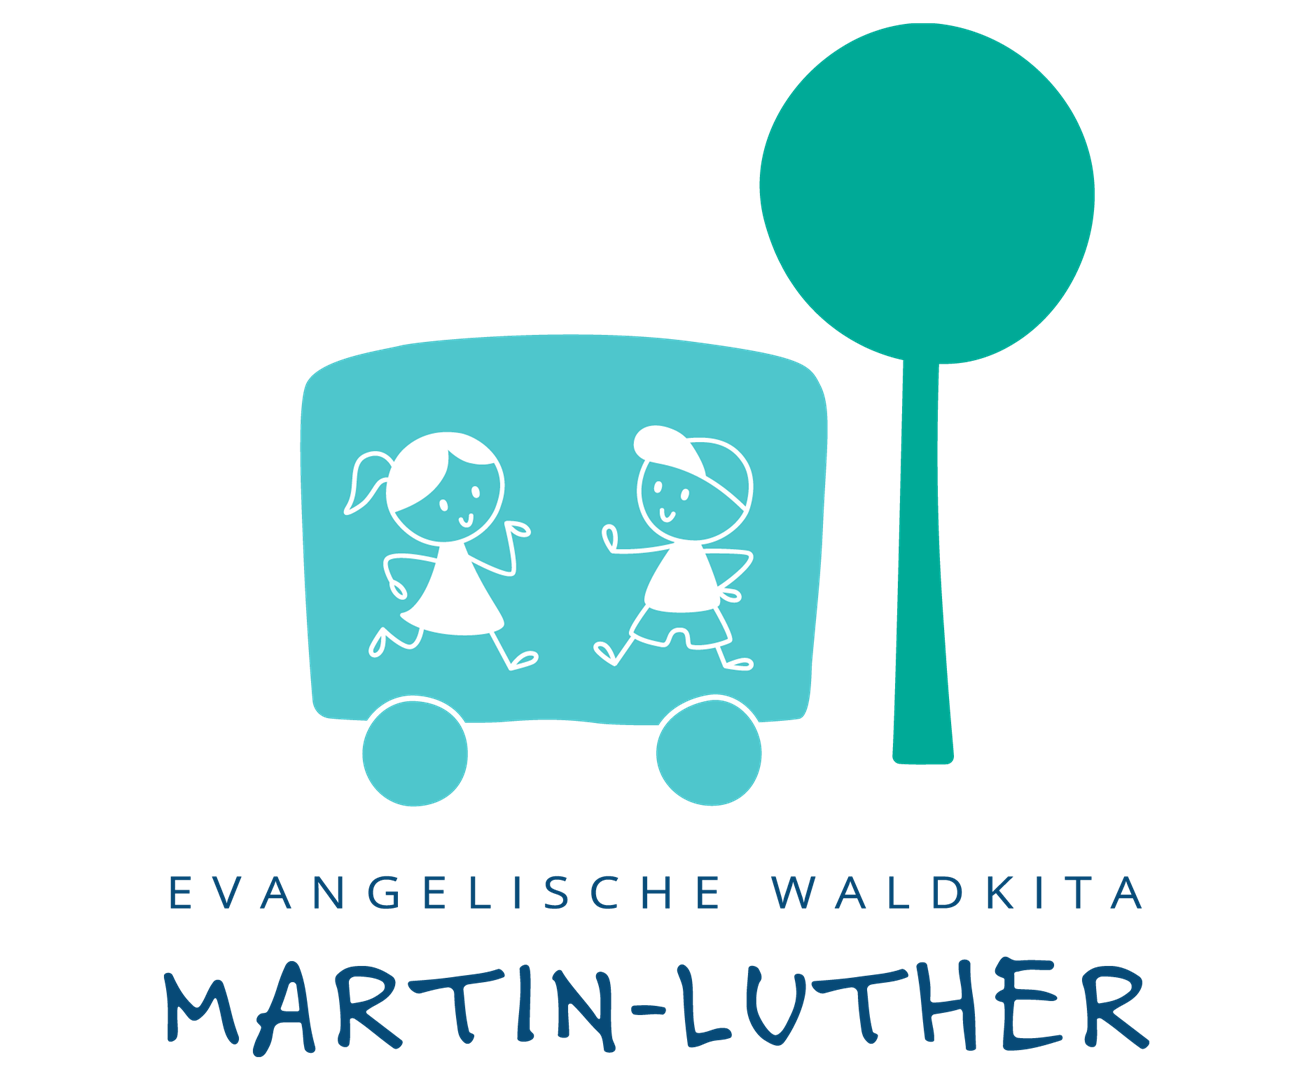 In einem gezeichneten grünen Bus stehen zwei gezeichnete Kinder, ein Mädchen und ein Junge. Daneben steht ein gezeichneter grüner Baum mit runder Krone. Darunter der Schriftzug "Evangelische Waldkita Martin-Luther".